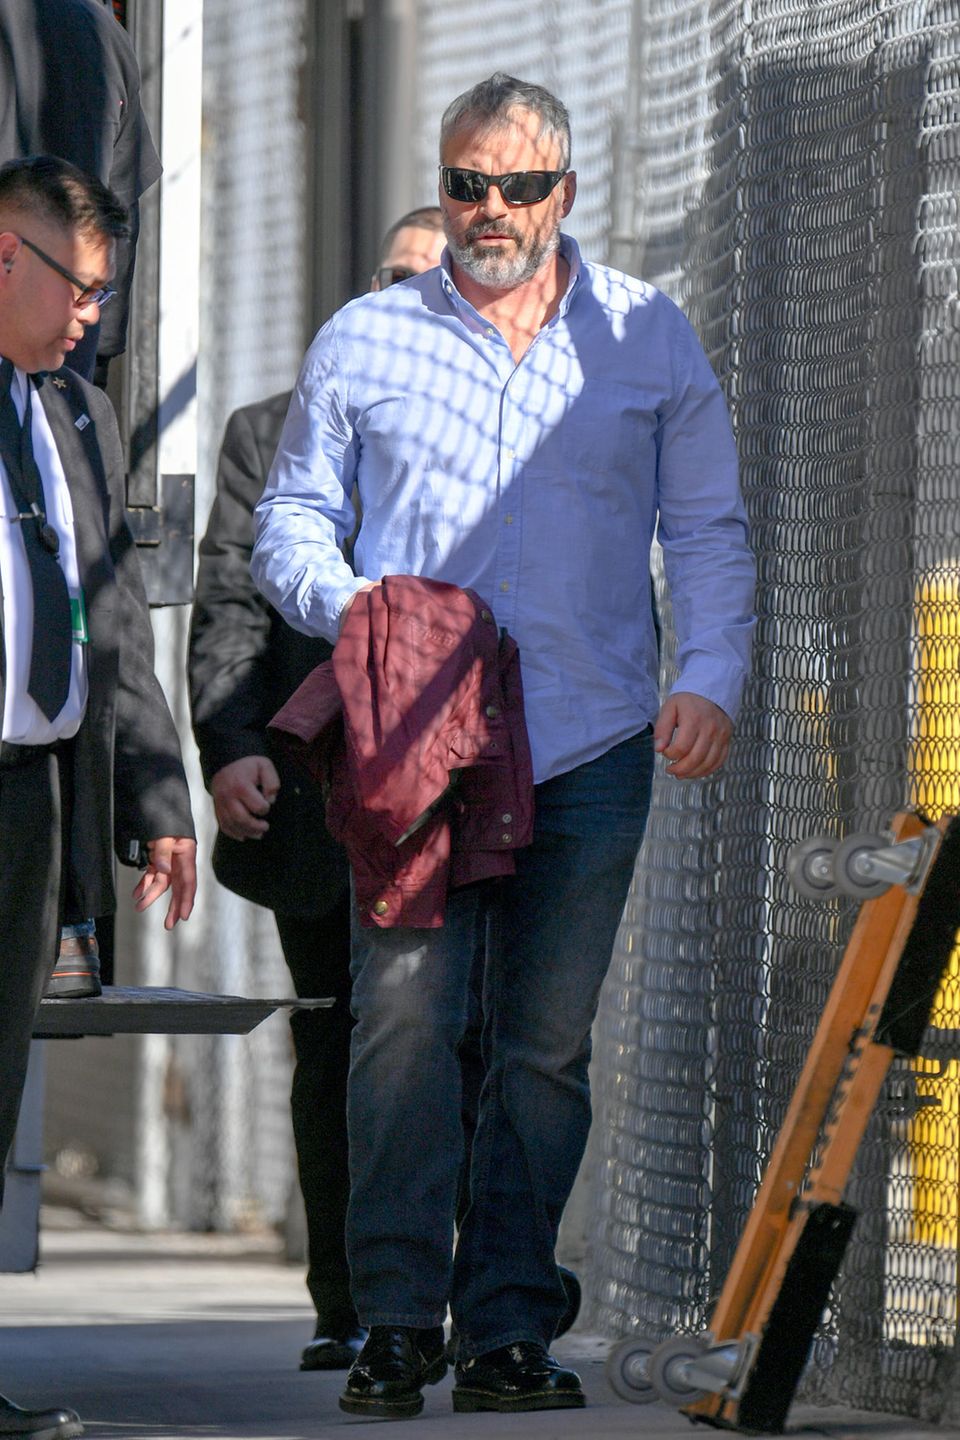 Auf dem Weg zur Show "Jimmy Kimmel Live!" erwischen Paparazzi diesen etwas in die Jahre gekommenen Schauspieler. In lässiger Jeans und einem schicken Hemd geht der 51-Jährige in die TV-Studios. Doch welches ehemalige Sexsymbol zeigt sich hier mit neuem Wohlfühlgewicht und grauem Bart?